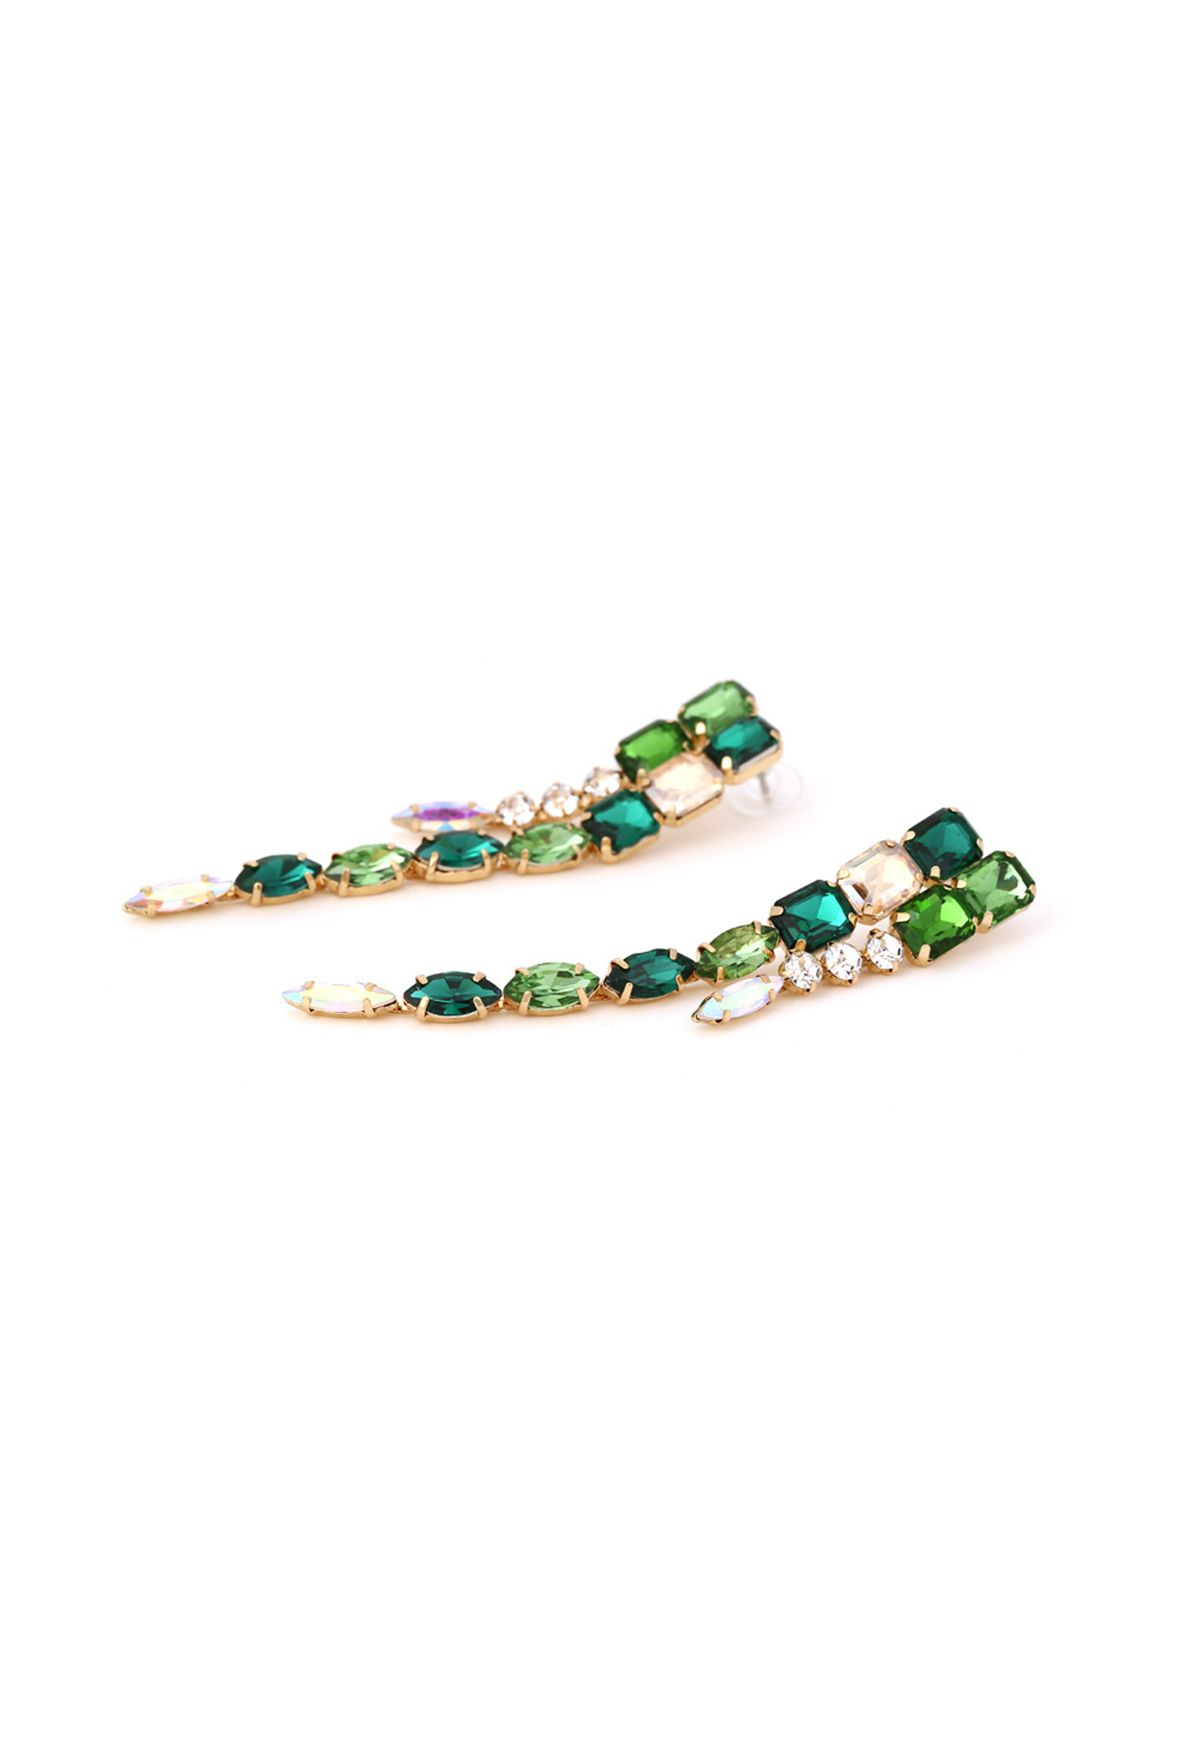 Lange Ohrringe mit Smaragd-Edelsteinen verbinden